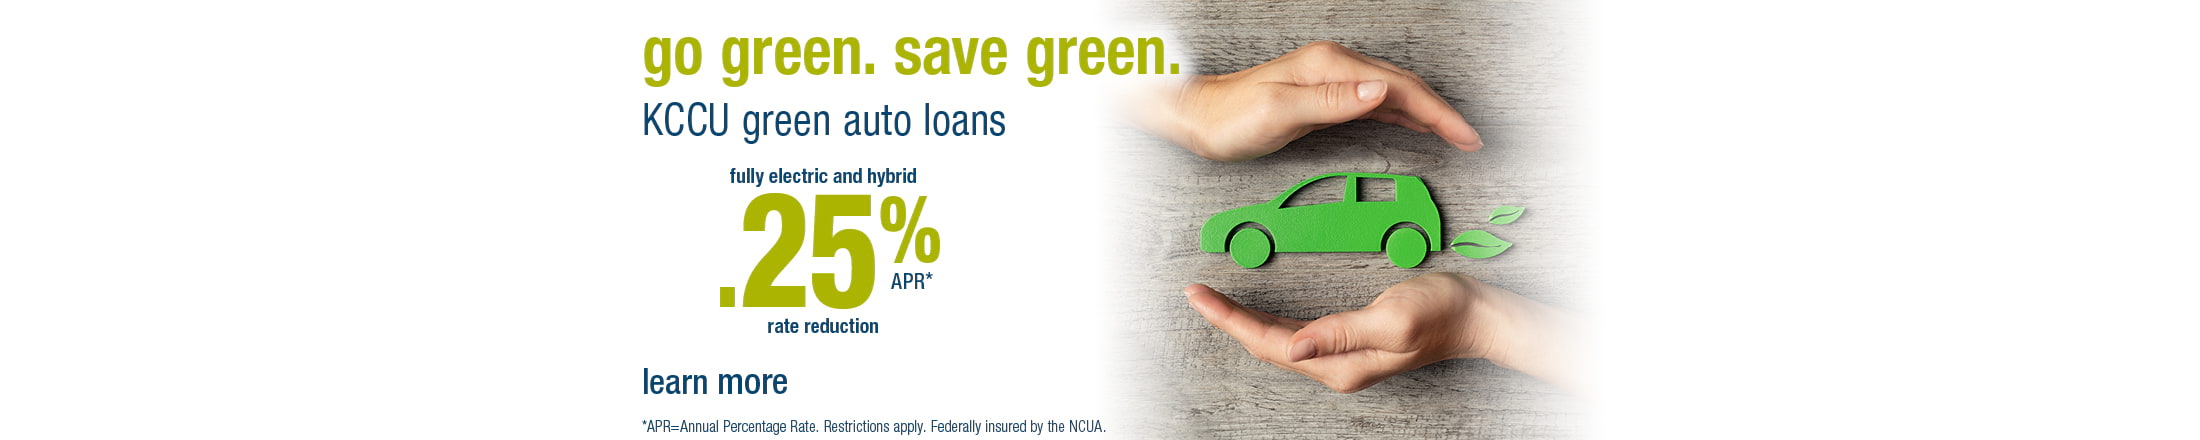 Go green auto loan